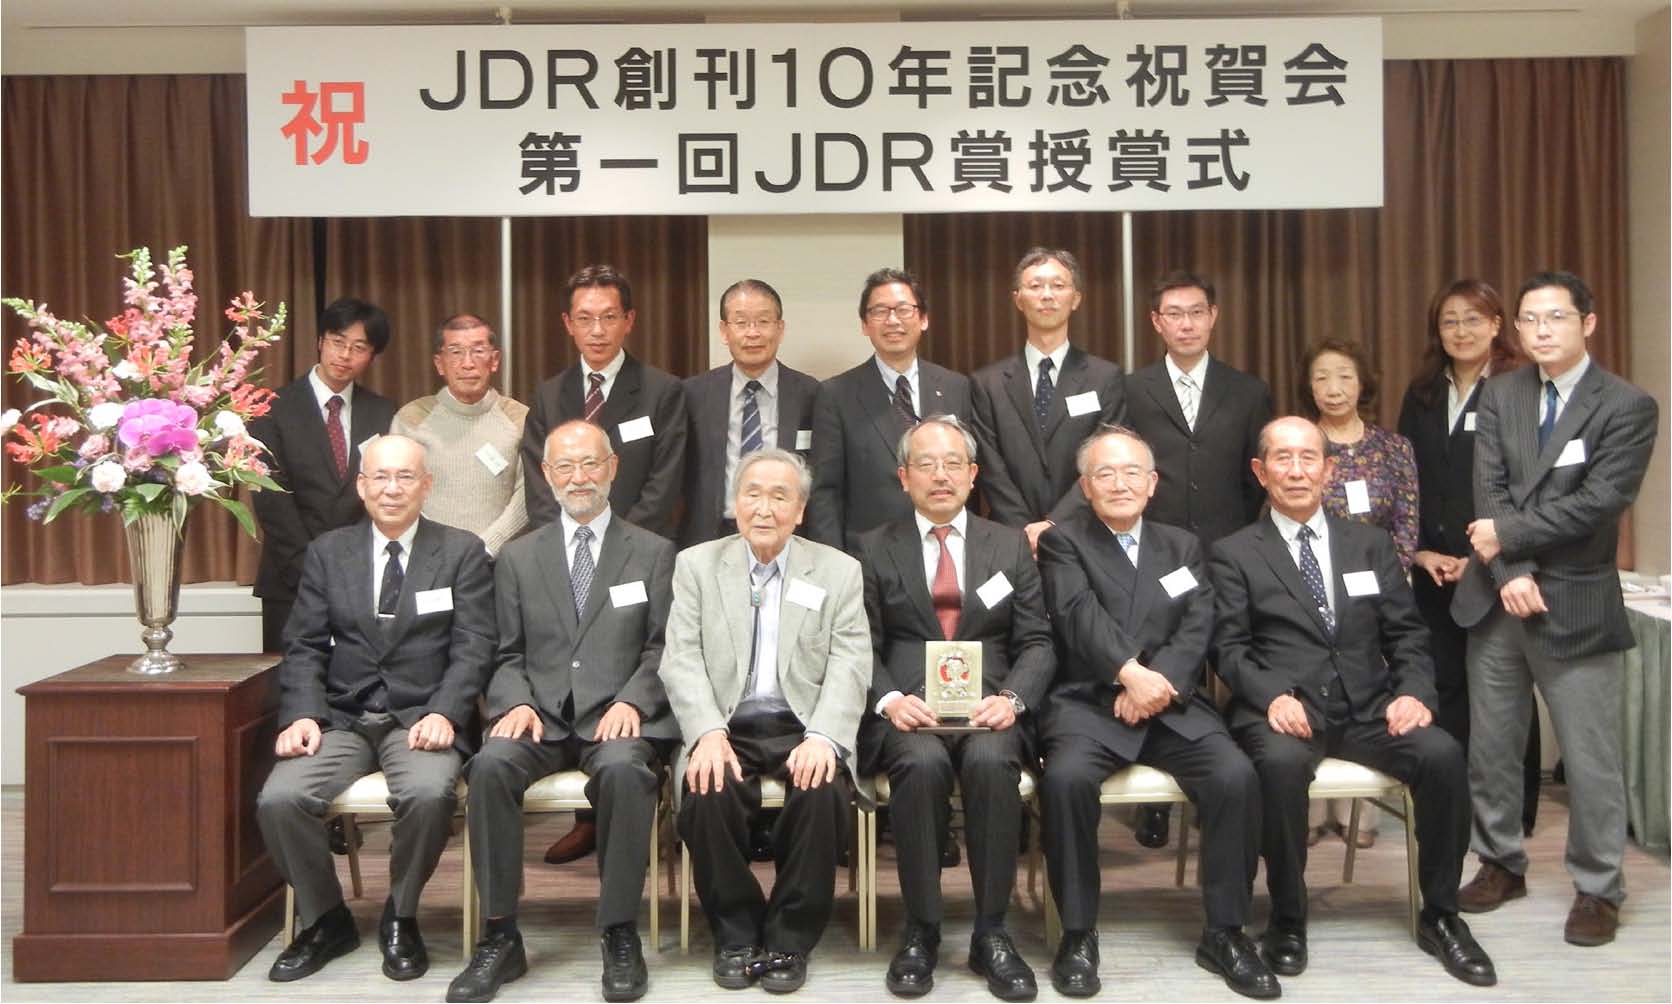 JDR award 2015